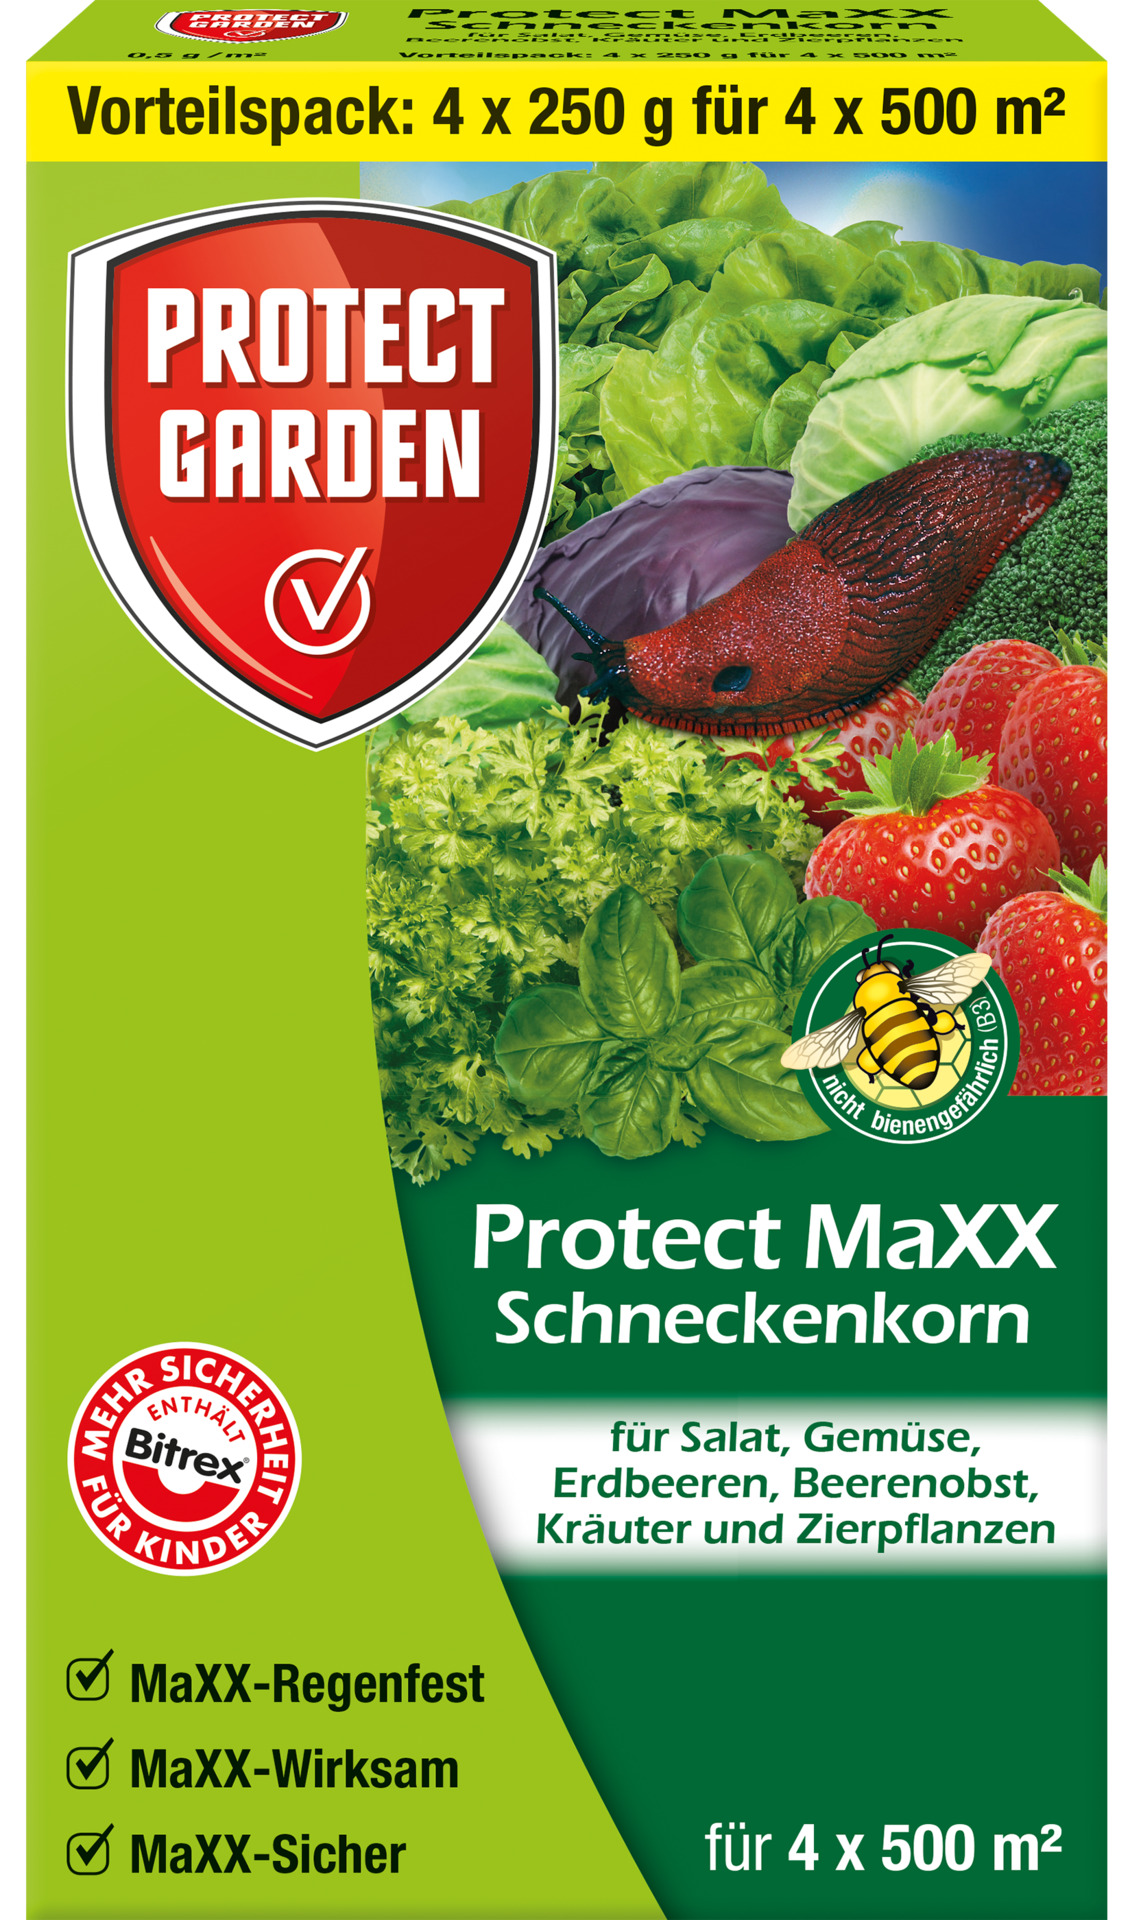 SBM Life Sience GmbH Garten Schneckenkorn Protect MaXX